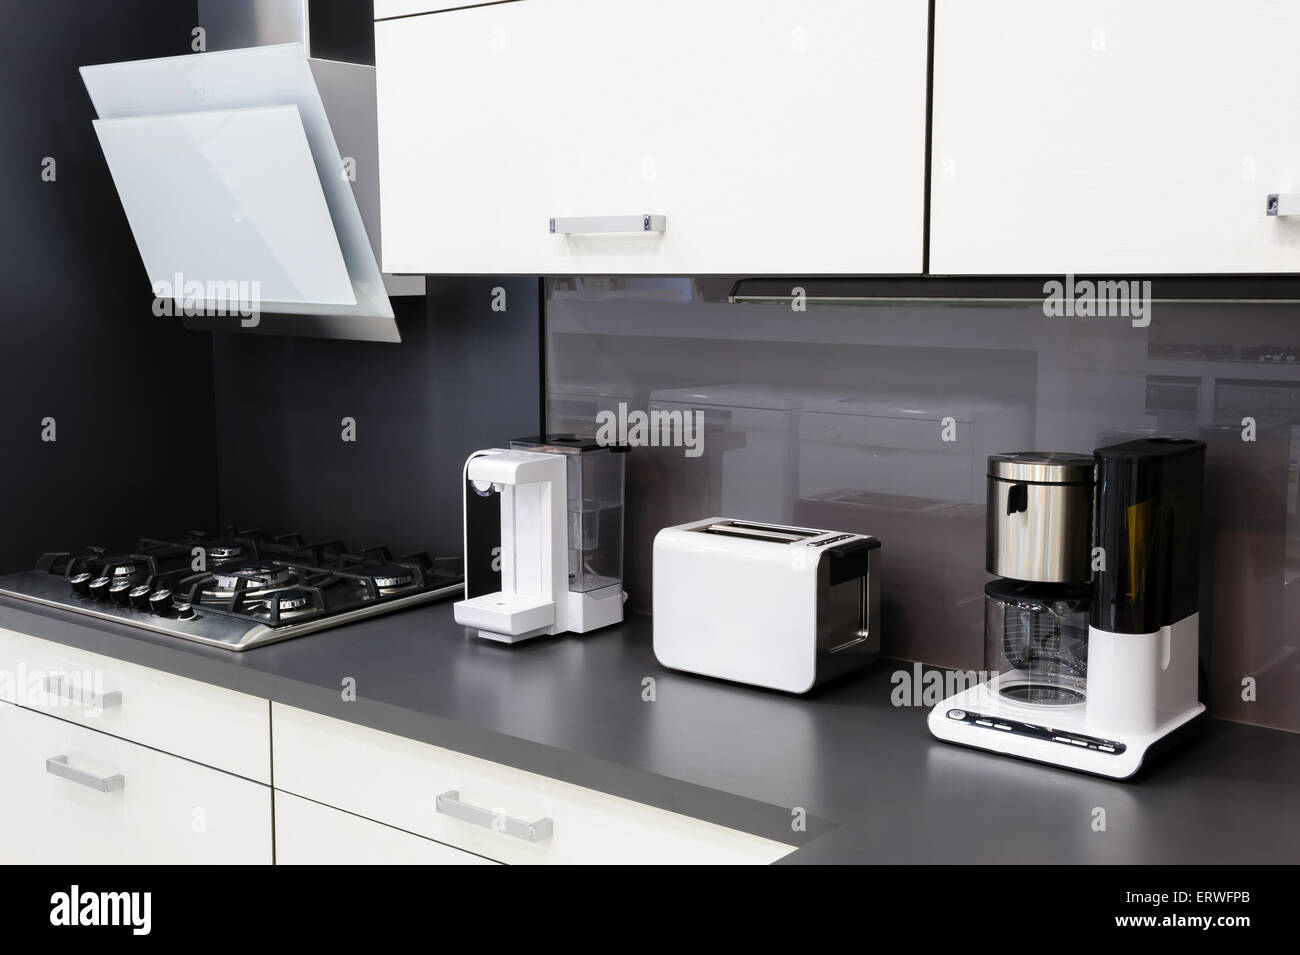 Modern kitchen, clean interior design Stock Photo